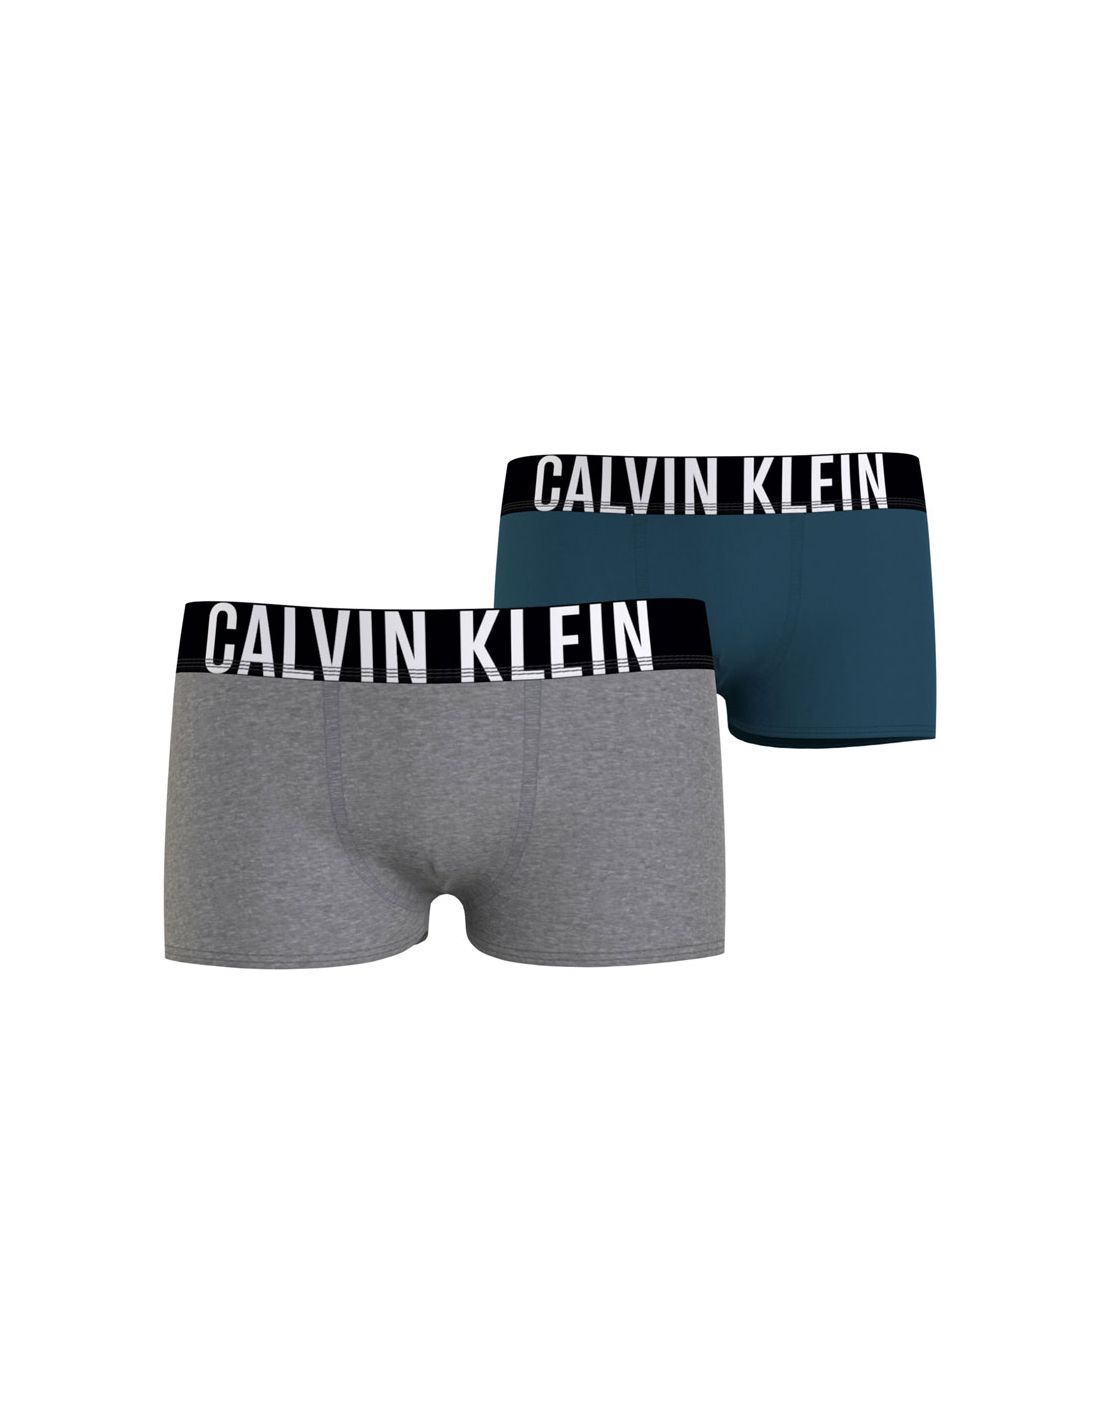 Doodt grafisch snap Calvin Klein Intense Power Grijs Blauw 2Pack Boxershorts Jongens Ondergoed  OUD